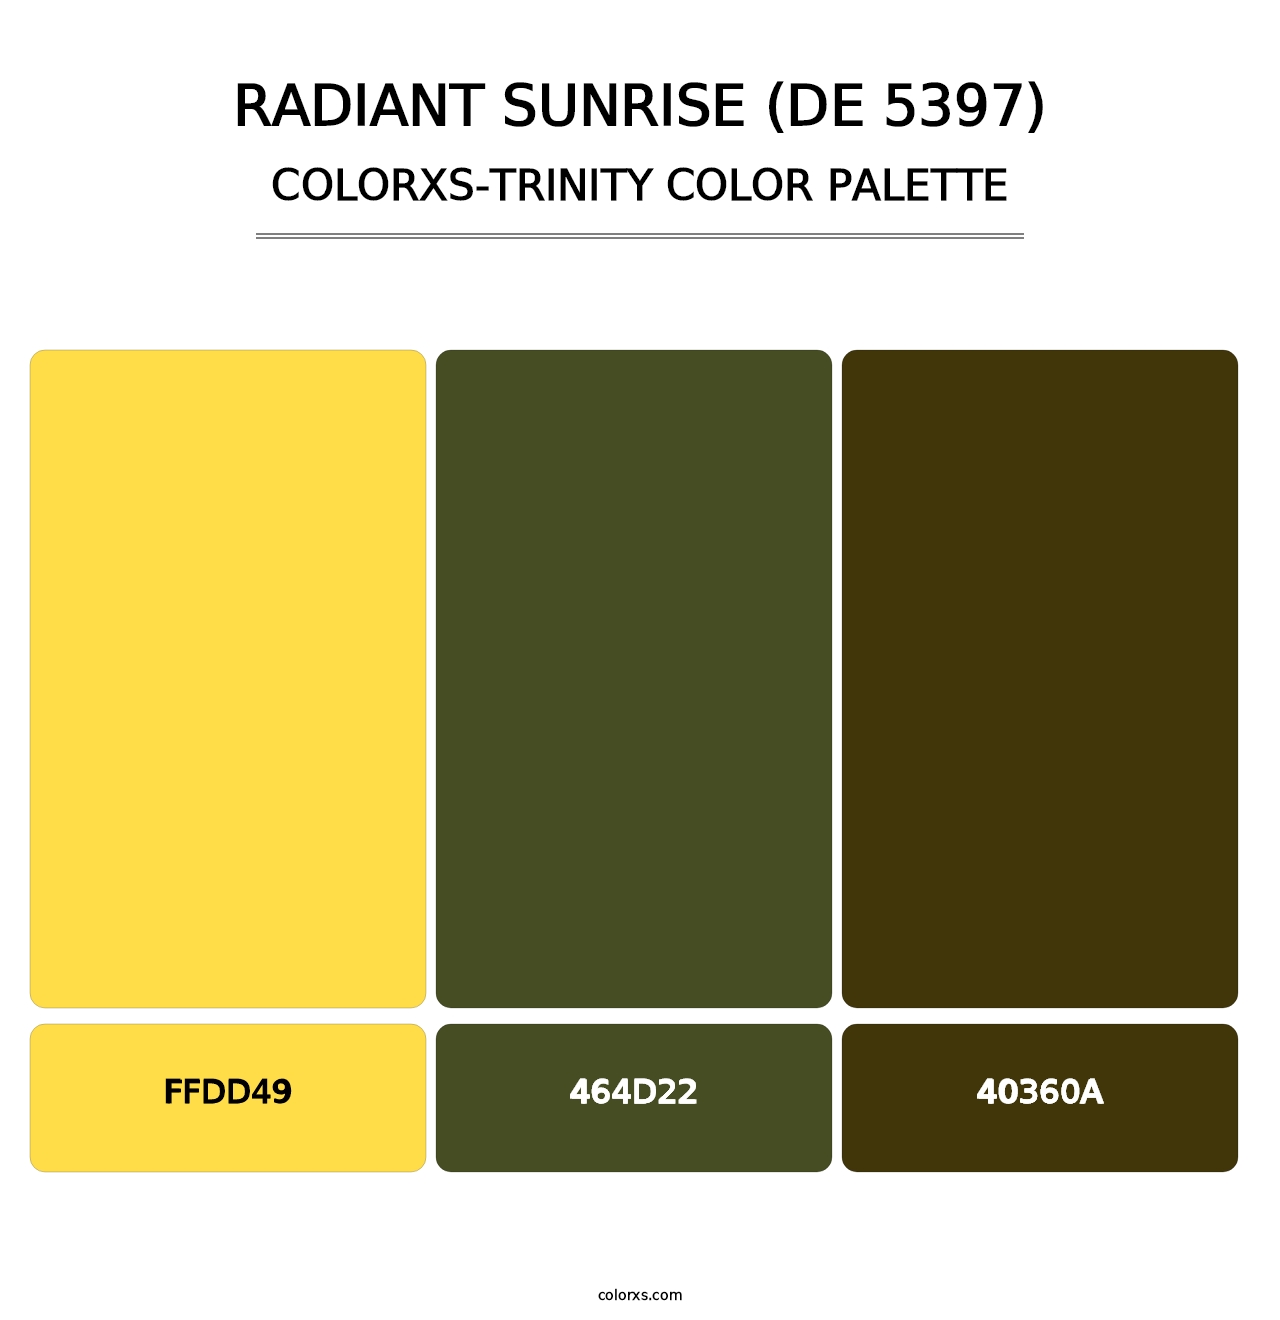 Radiant Sunrise (DE 5397) - Colorxs Trinity Palette